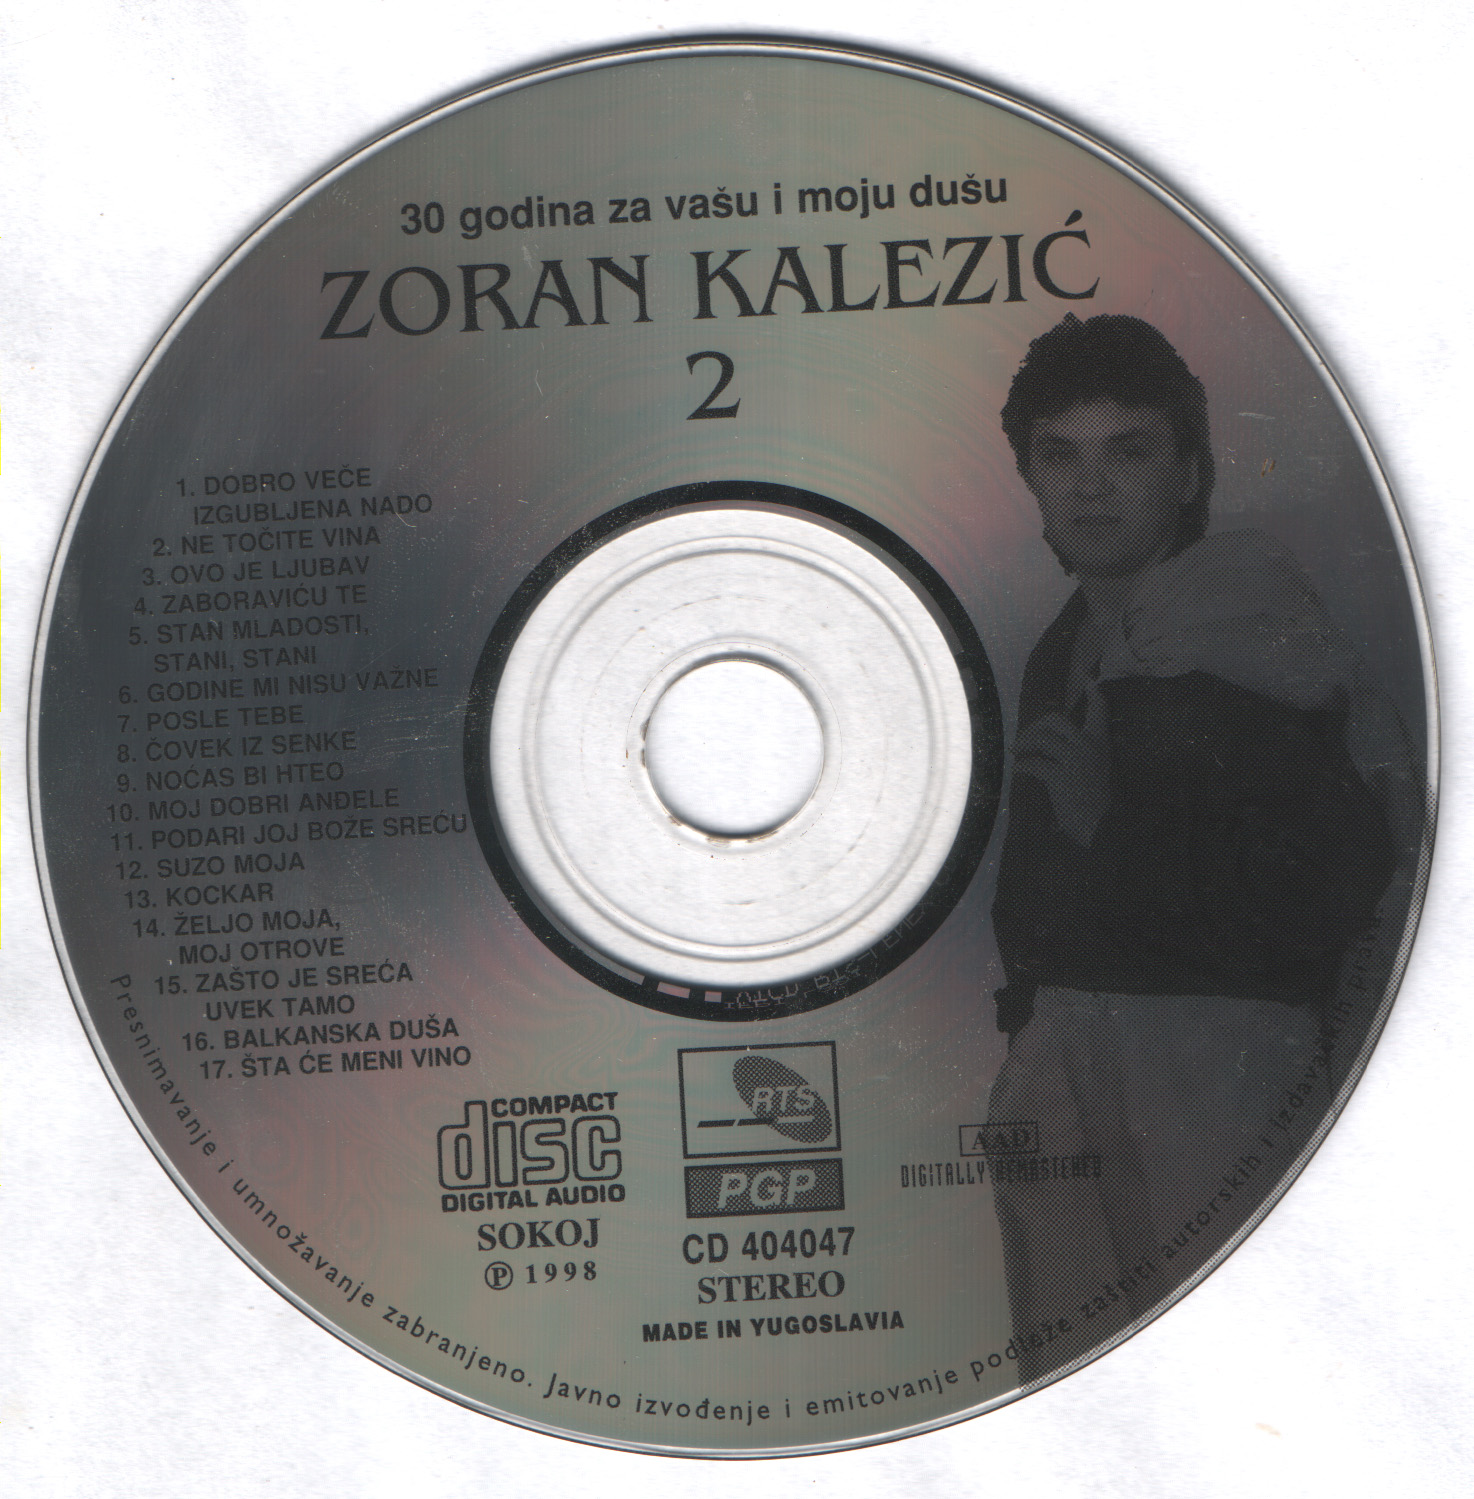 Zoran Kalezic 1998 30 godina 02 Cd